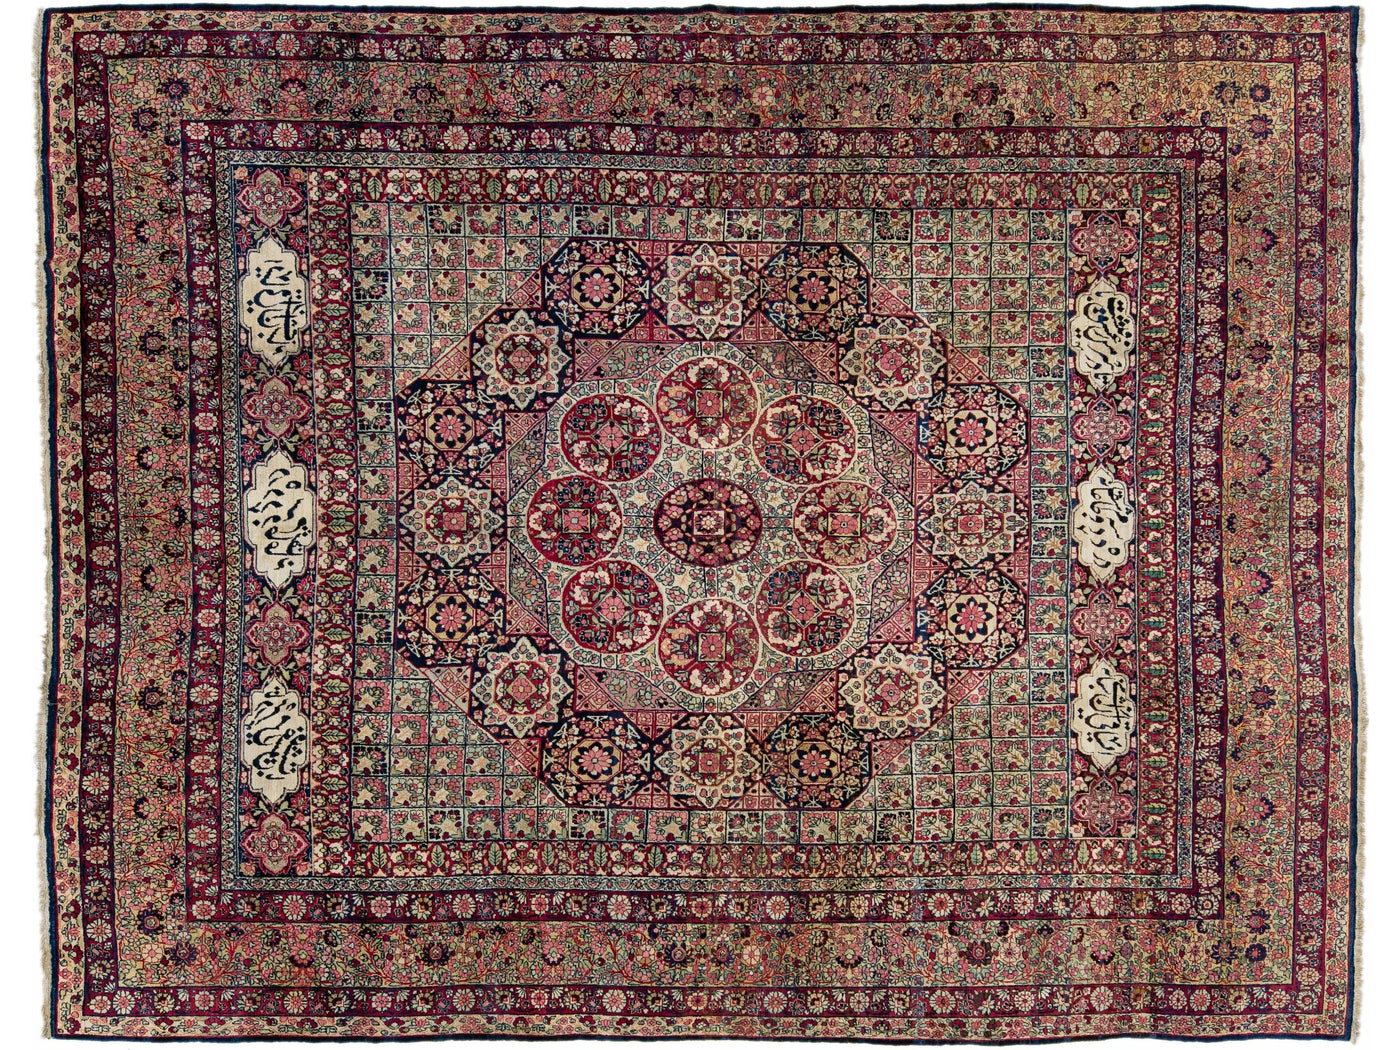 Antique Kerman Handmade Allover Floral Designed Wool Rug